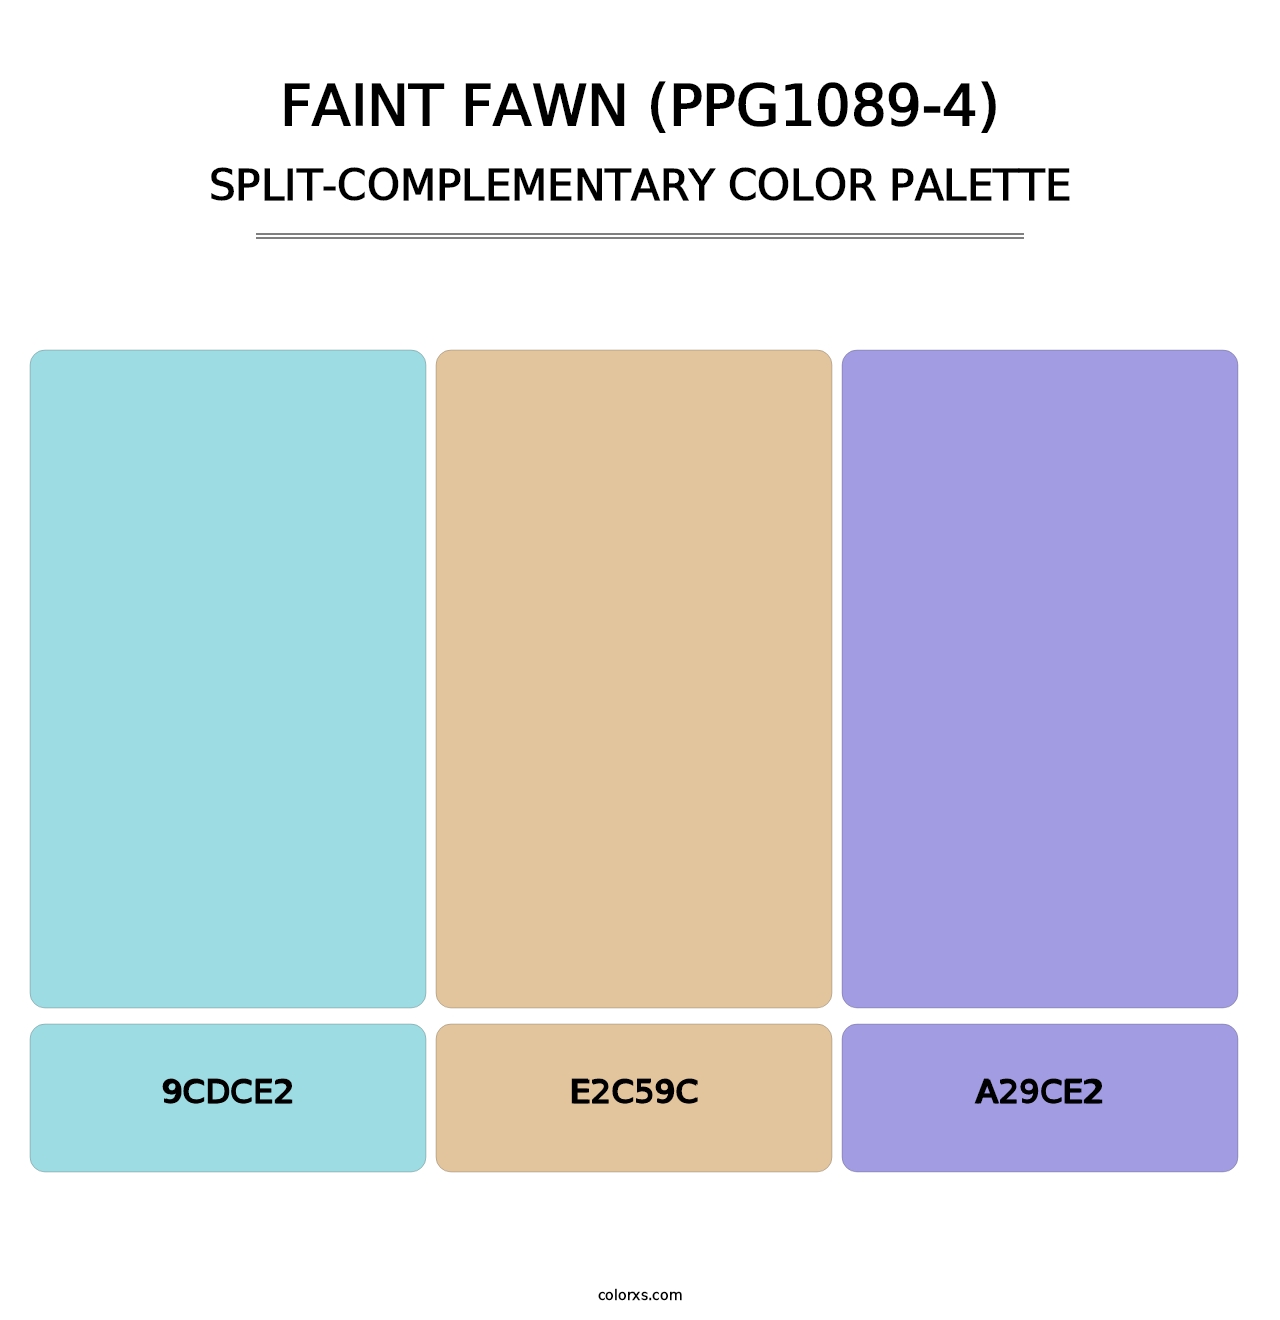 Faint Fawn (PPG1089-4) - Split-Complementary Color Palette